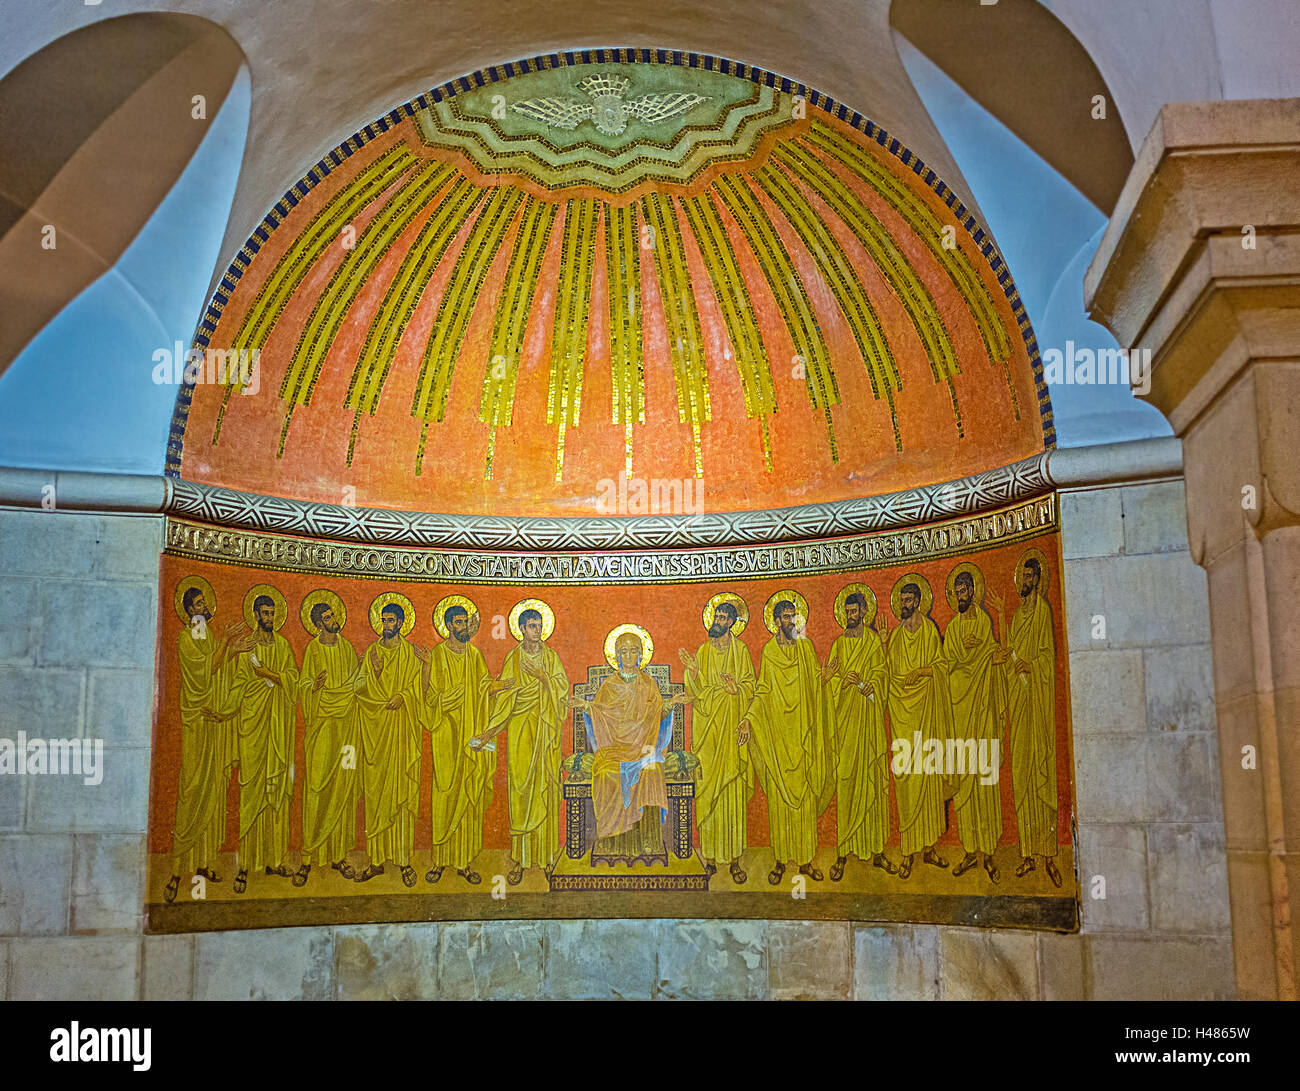 El altar de la cripta de la Iglesia de la Dormición, muestra a la Virgen María y apóstoles de Jesús, en Jerusalén, Israel Foto de stock